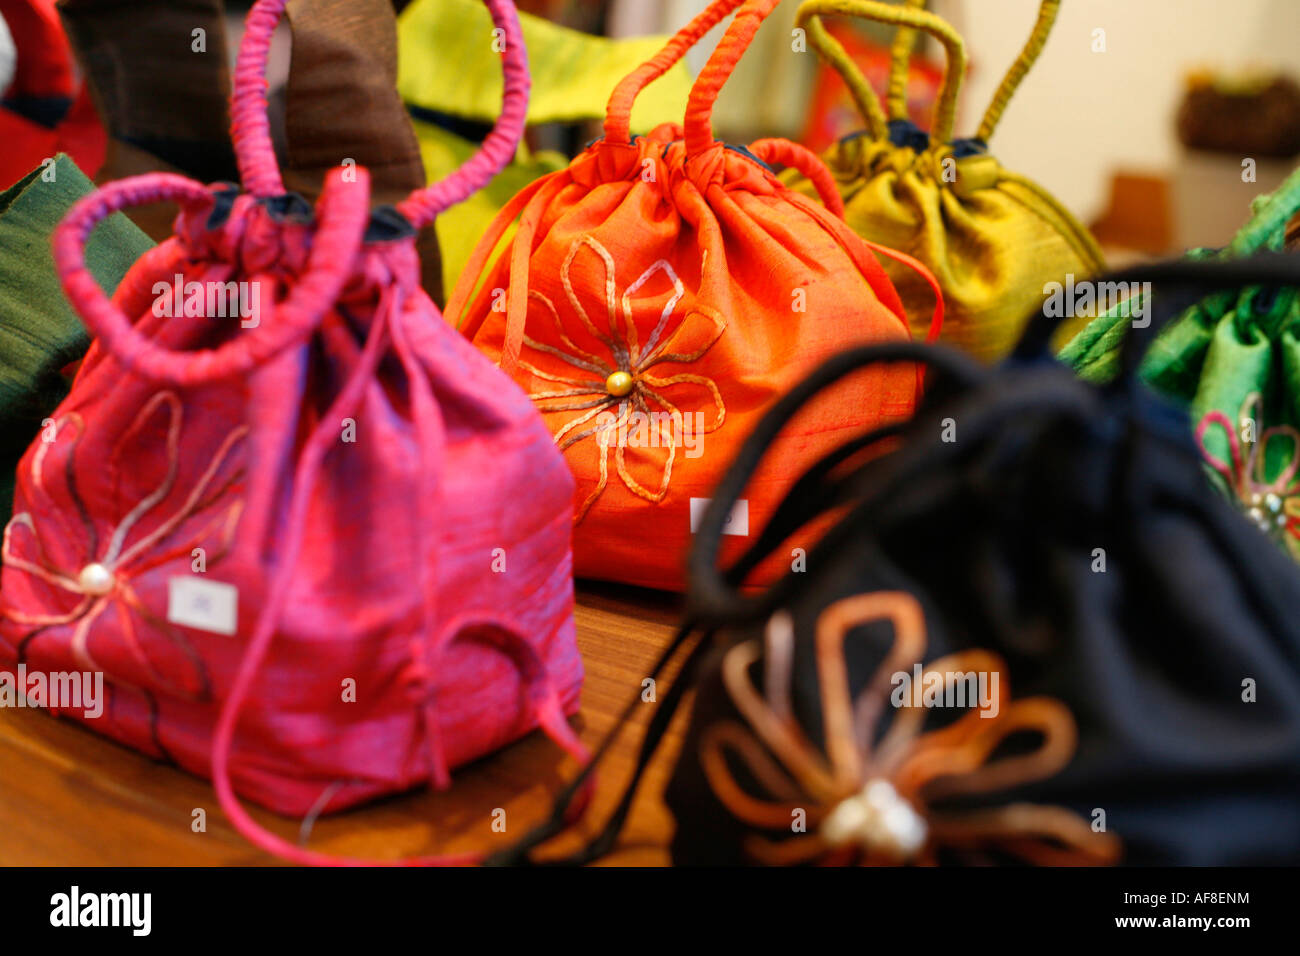 Des sacs colorés dans un magasin, vous n'avez qu'à l'ameublement, Washington DC, United States, USA Banque D'Images